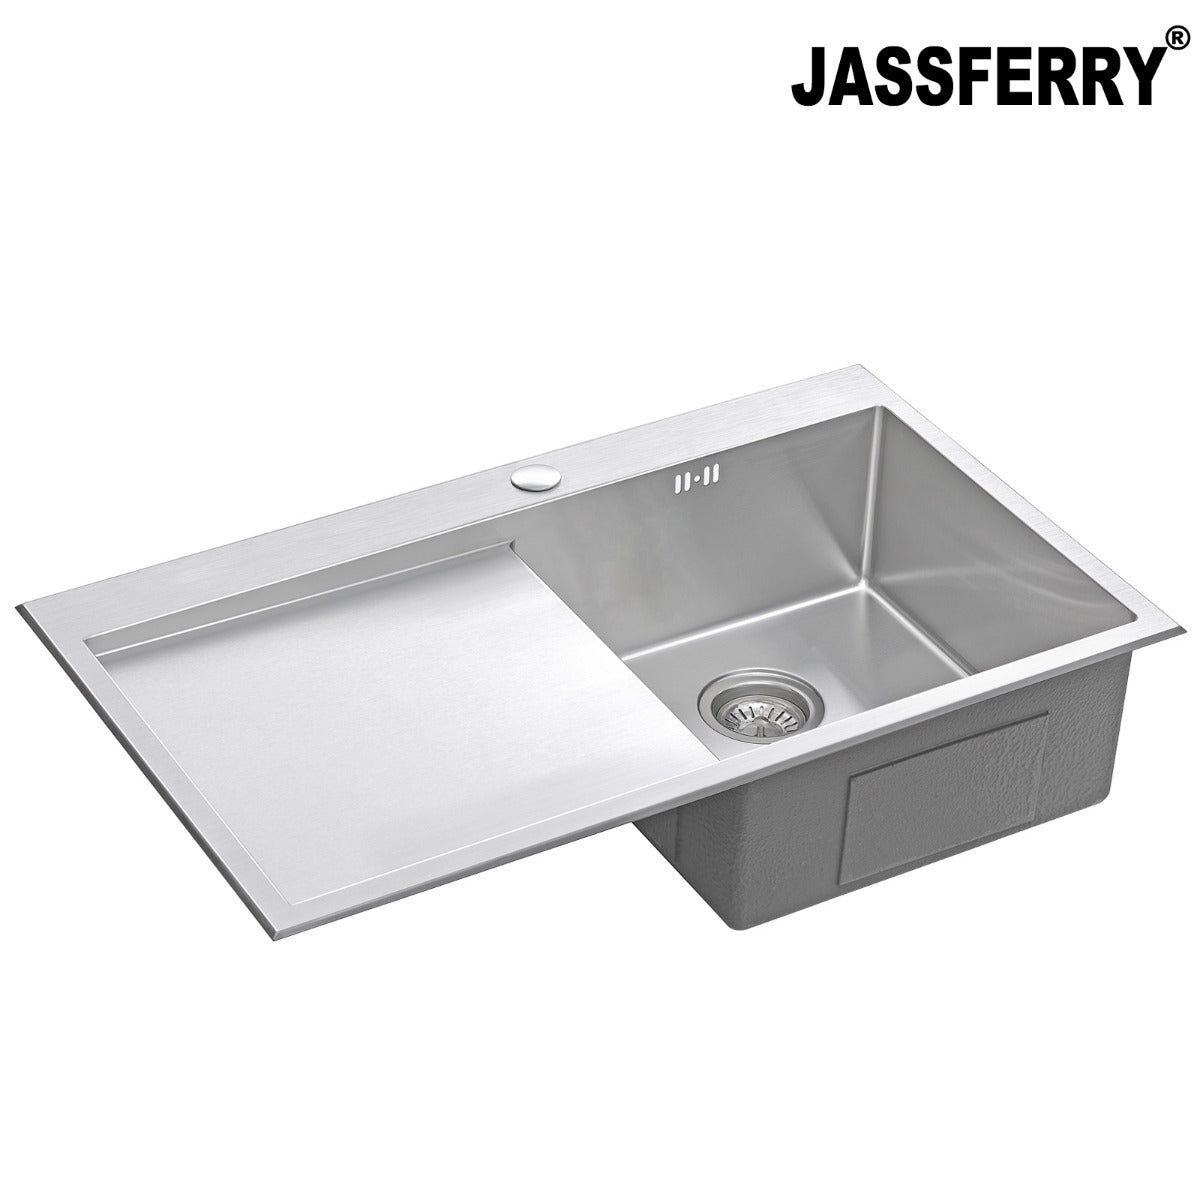 JassferryJASSFERRY Handcrafted Stainless Steel Kitchen Sink Inset 1 Bowl Lefthand DrainerKitchen Sinks